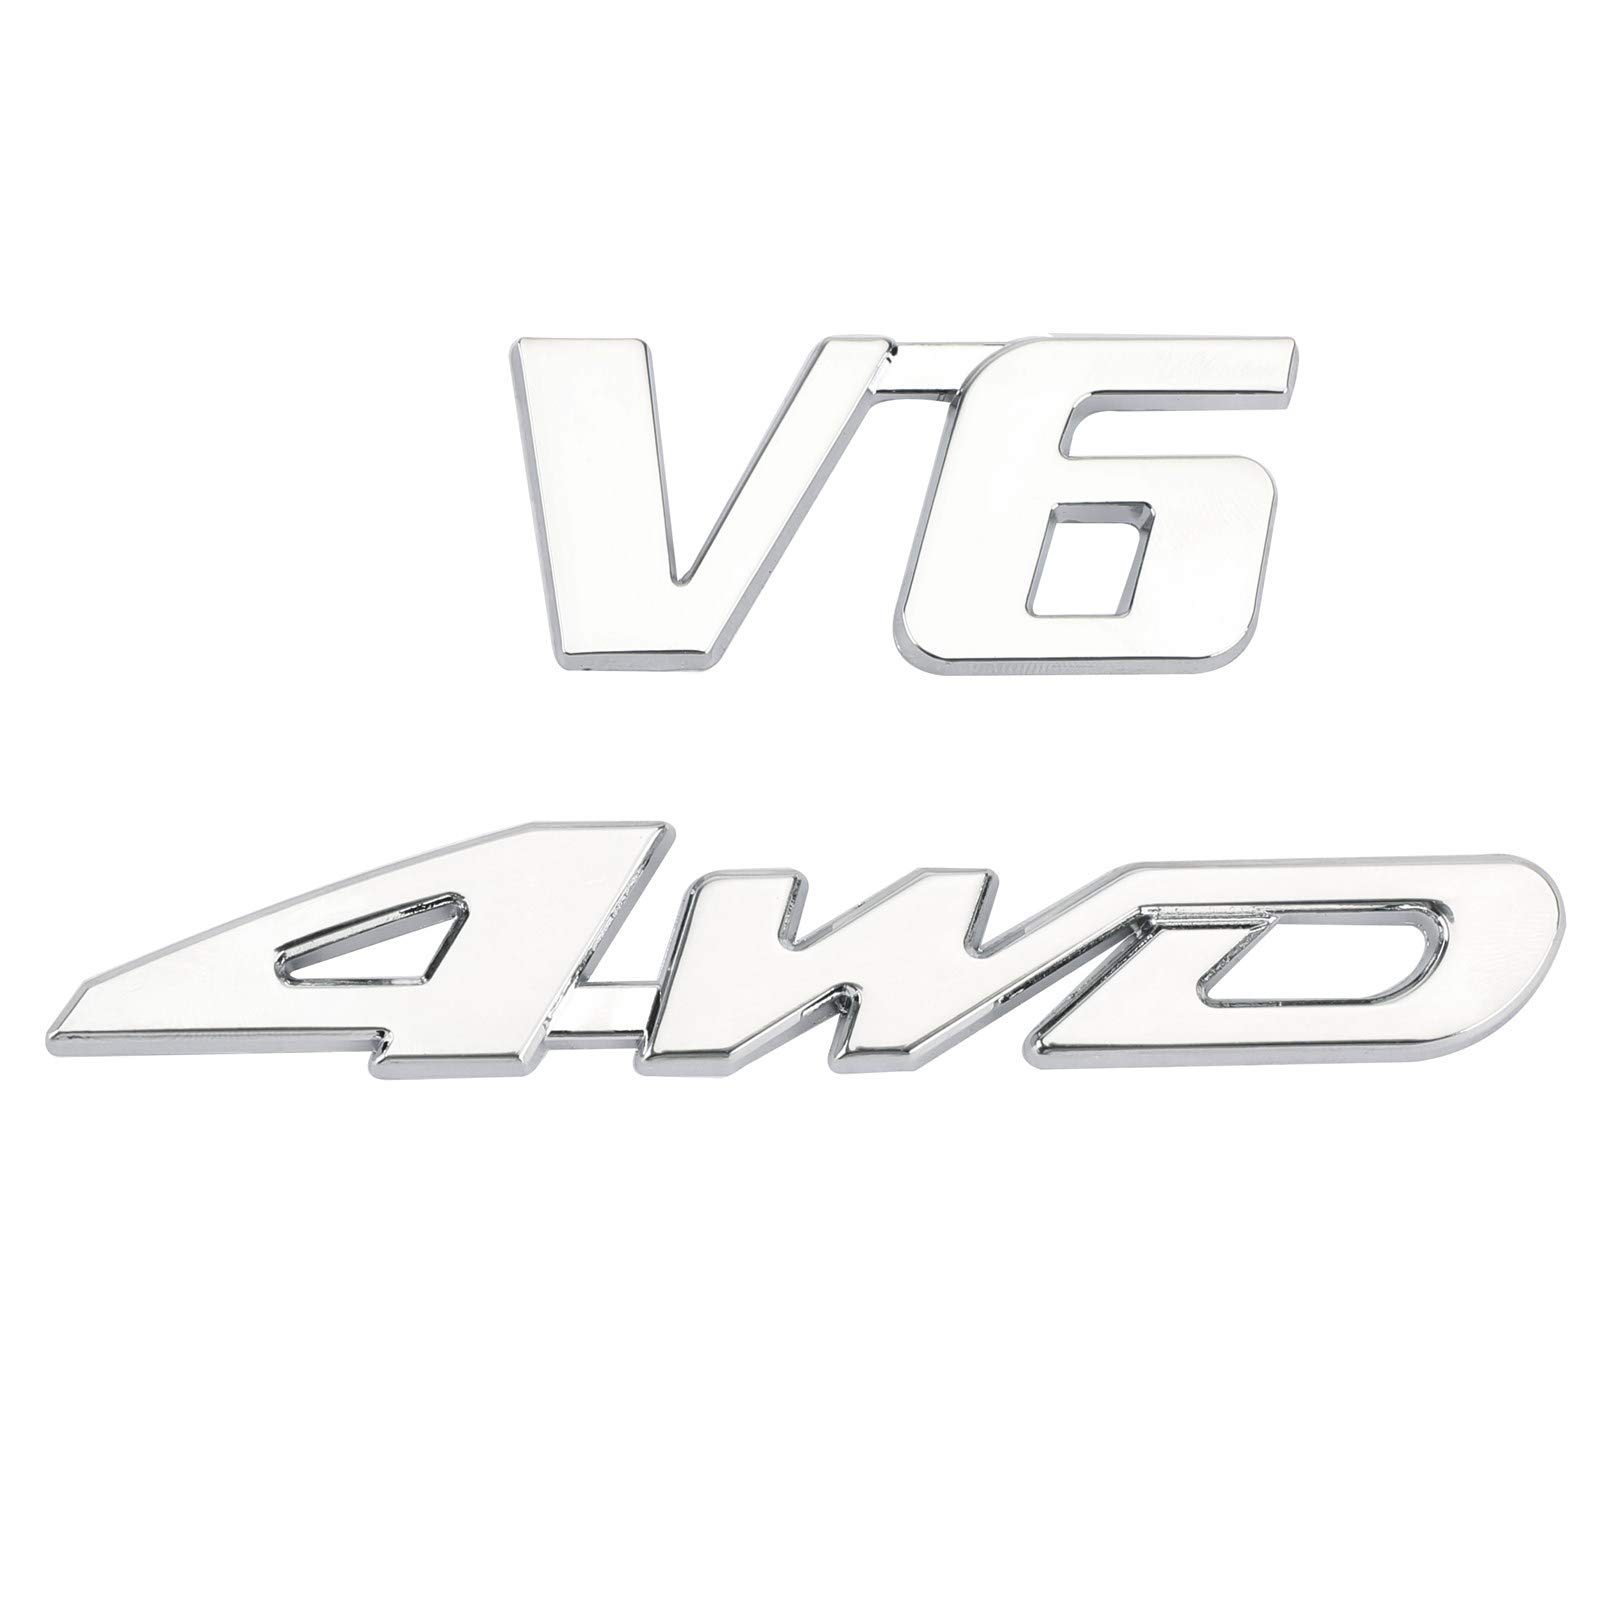 VIPIH 3D Chrom Metall 4WD Auto Kofferraum Hinten Kotflügel Emblem Abzeichen Aufkleber 4WD SUV V6 von VIPIH